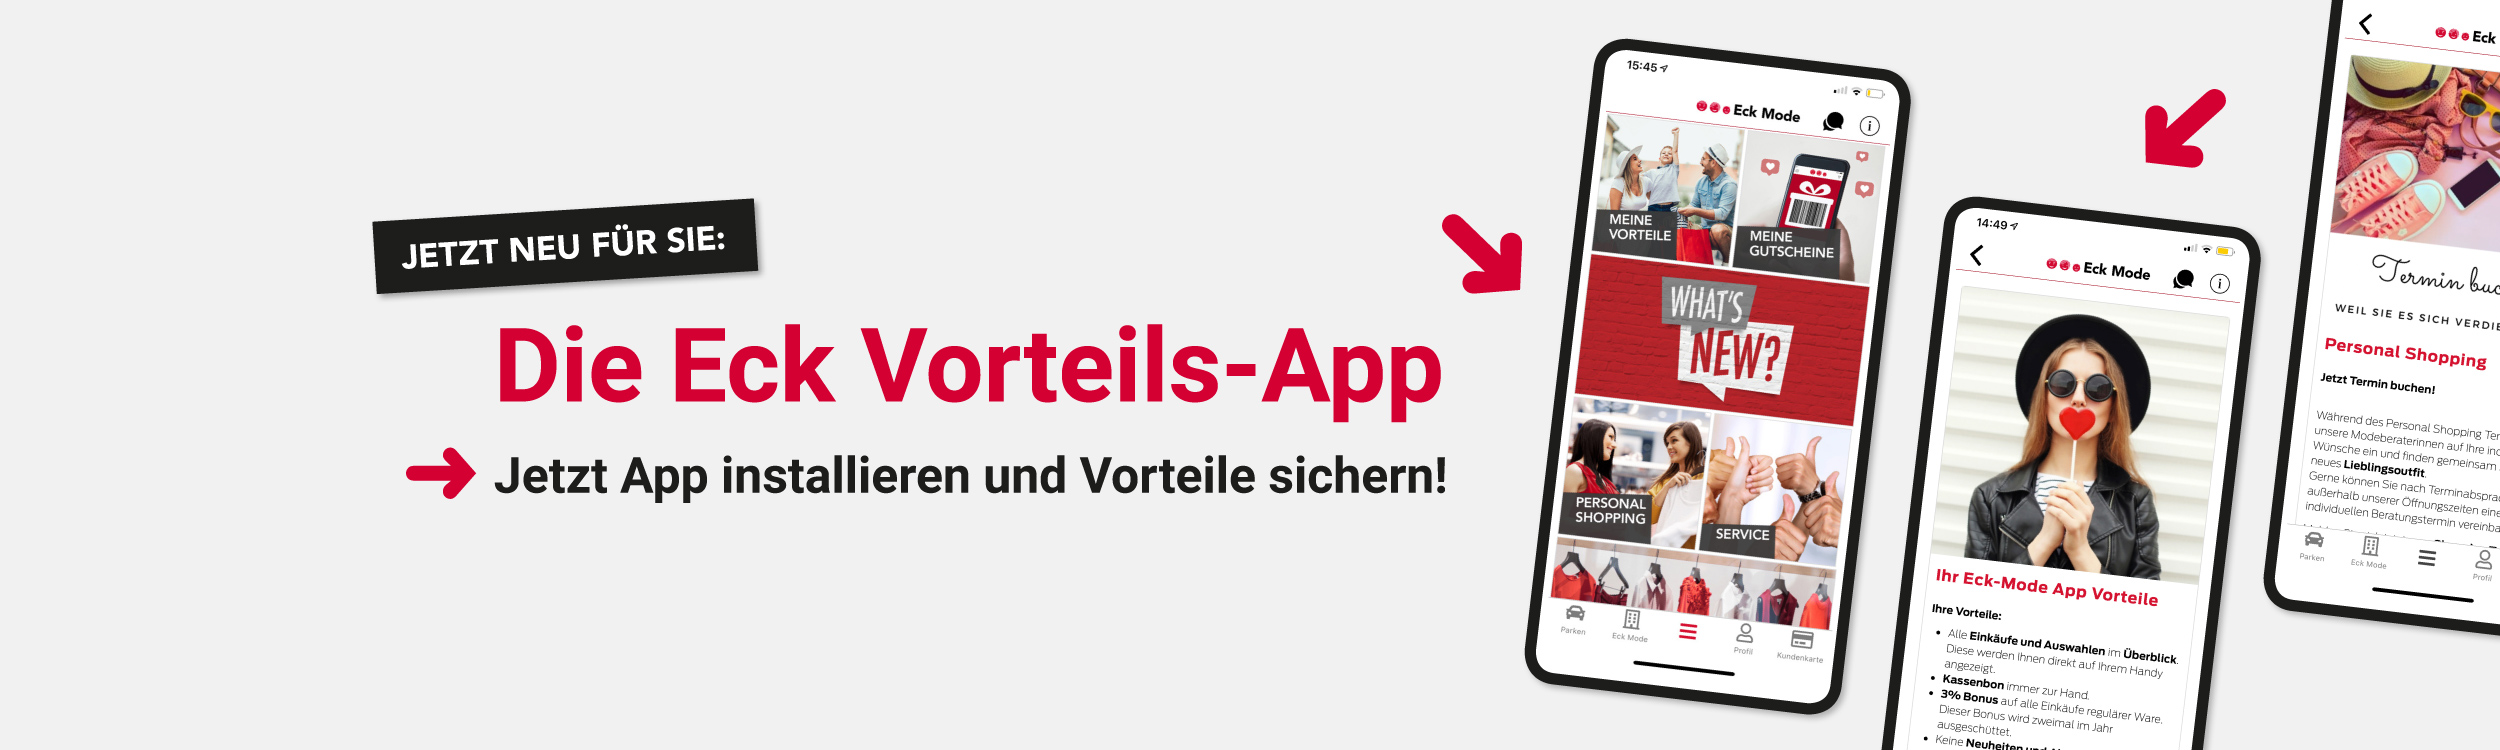 Eck Vorteils-App von Eck Mode am Markt Kirchheim